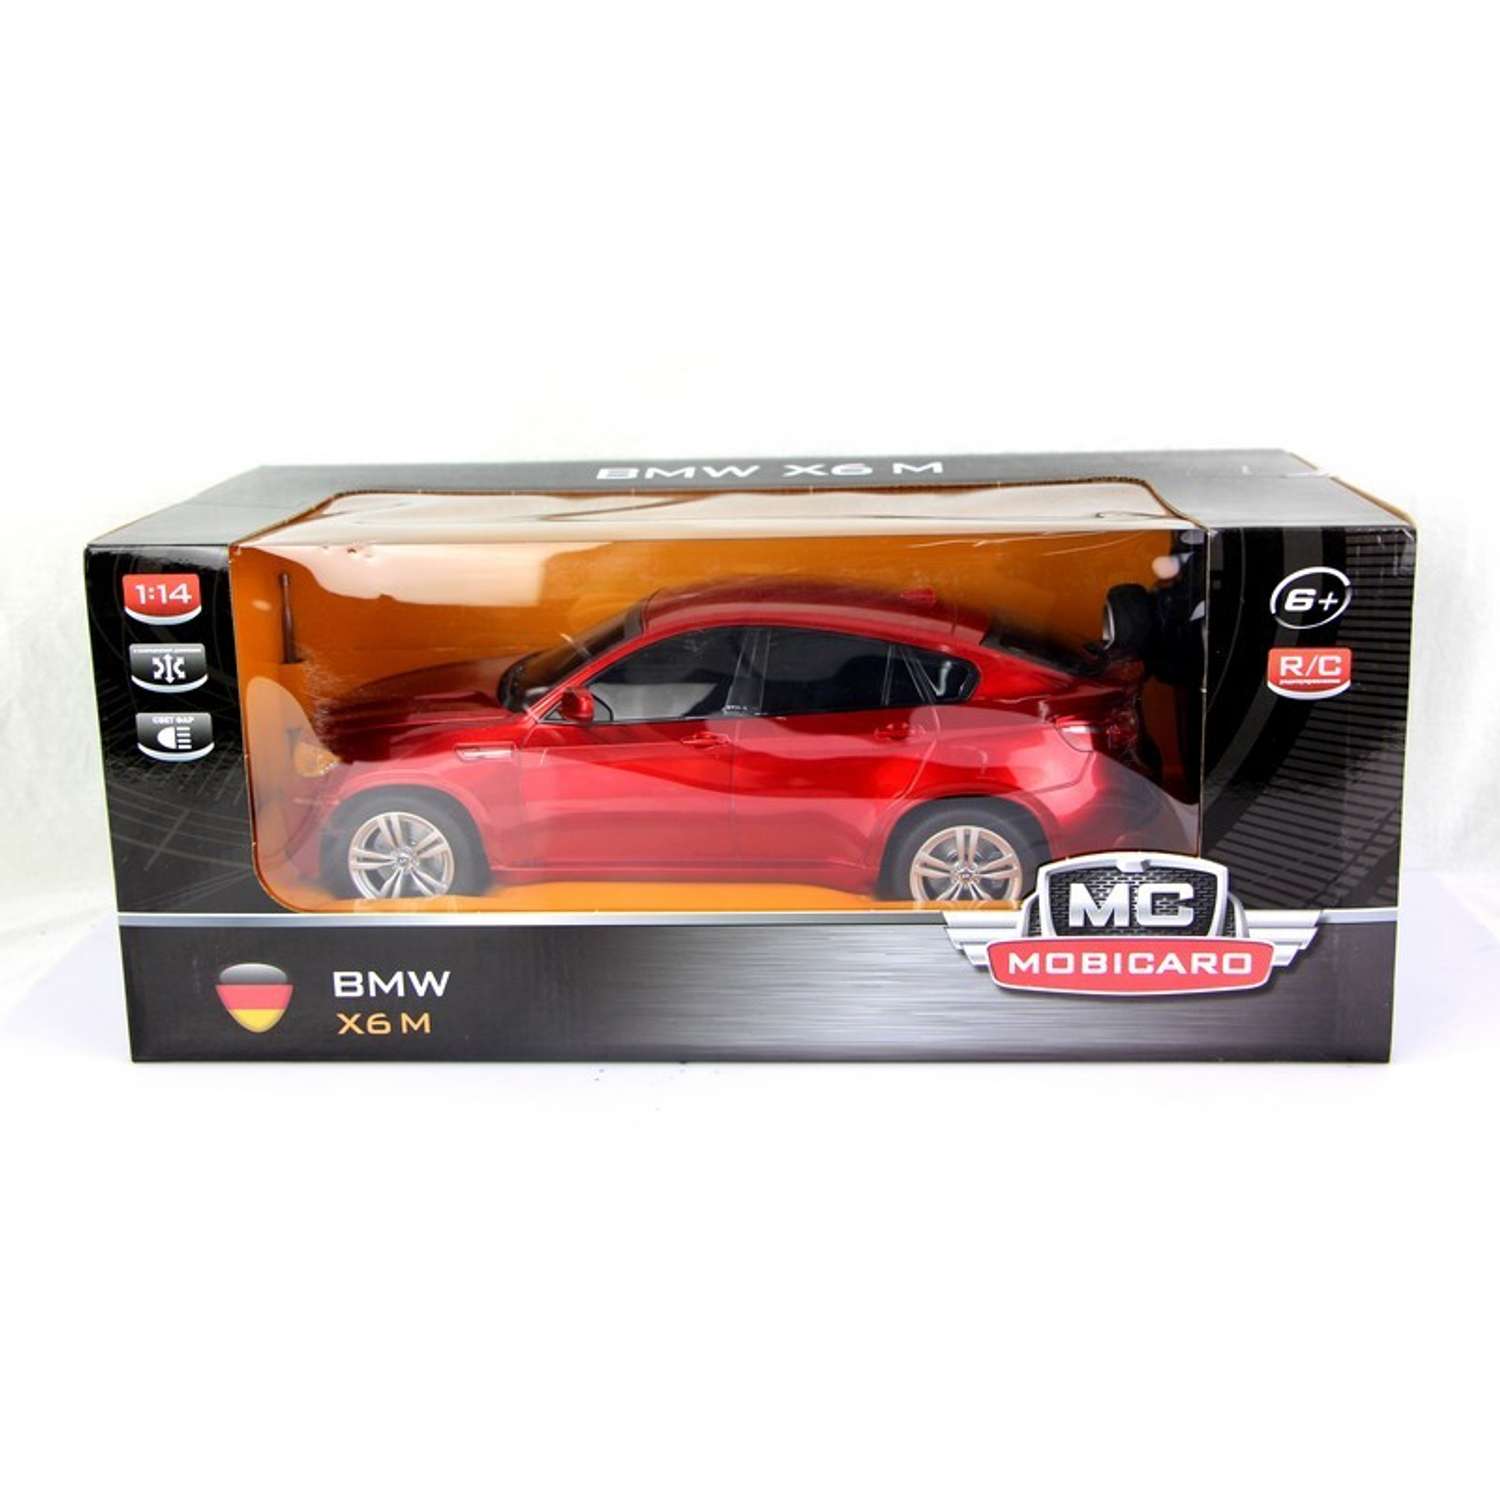 Машинка р/у Mobicaro BMW X6 1:14 (красная) 34 см - фото 2